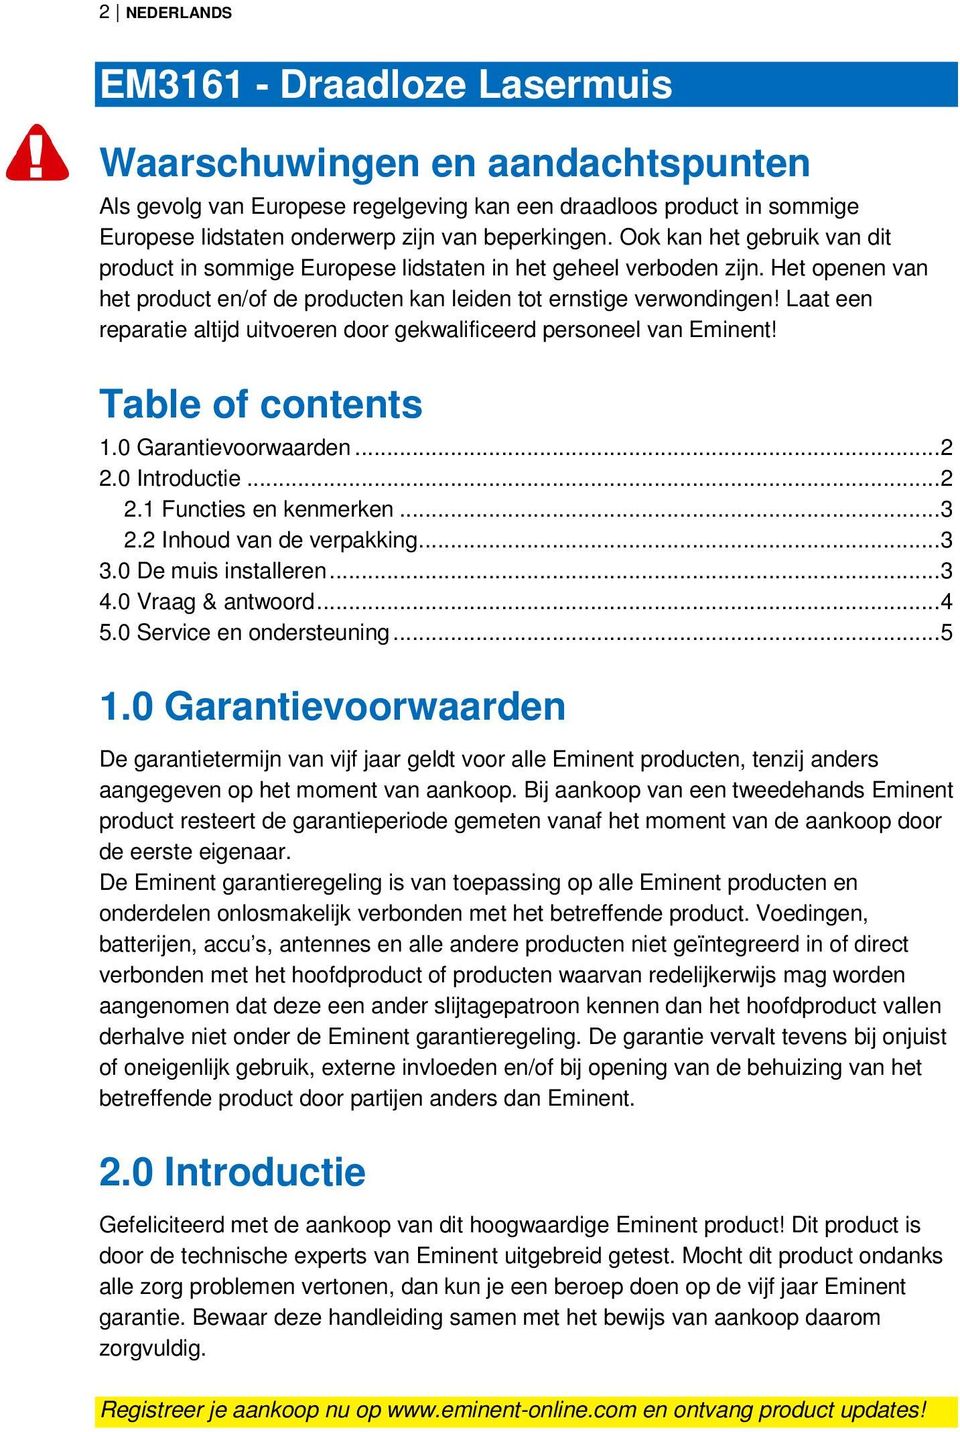 Laat een reparatie altijd uitvoeren door gekwalificeerd personeel van Eminent! Table of contents 1.0 Garantievoorwaarden...2 2.0 Introductie...2 2.1 Functies en kenmerken...3 2.